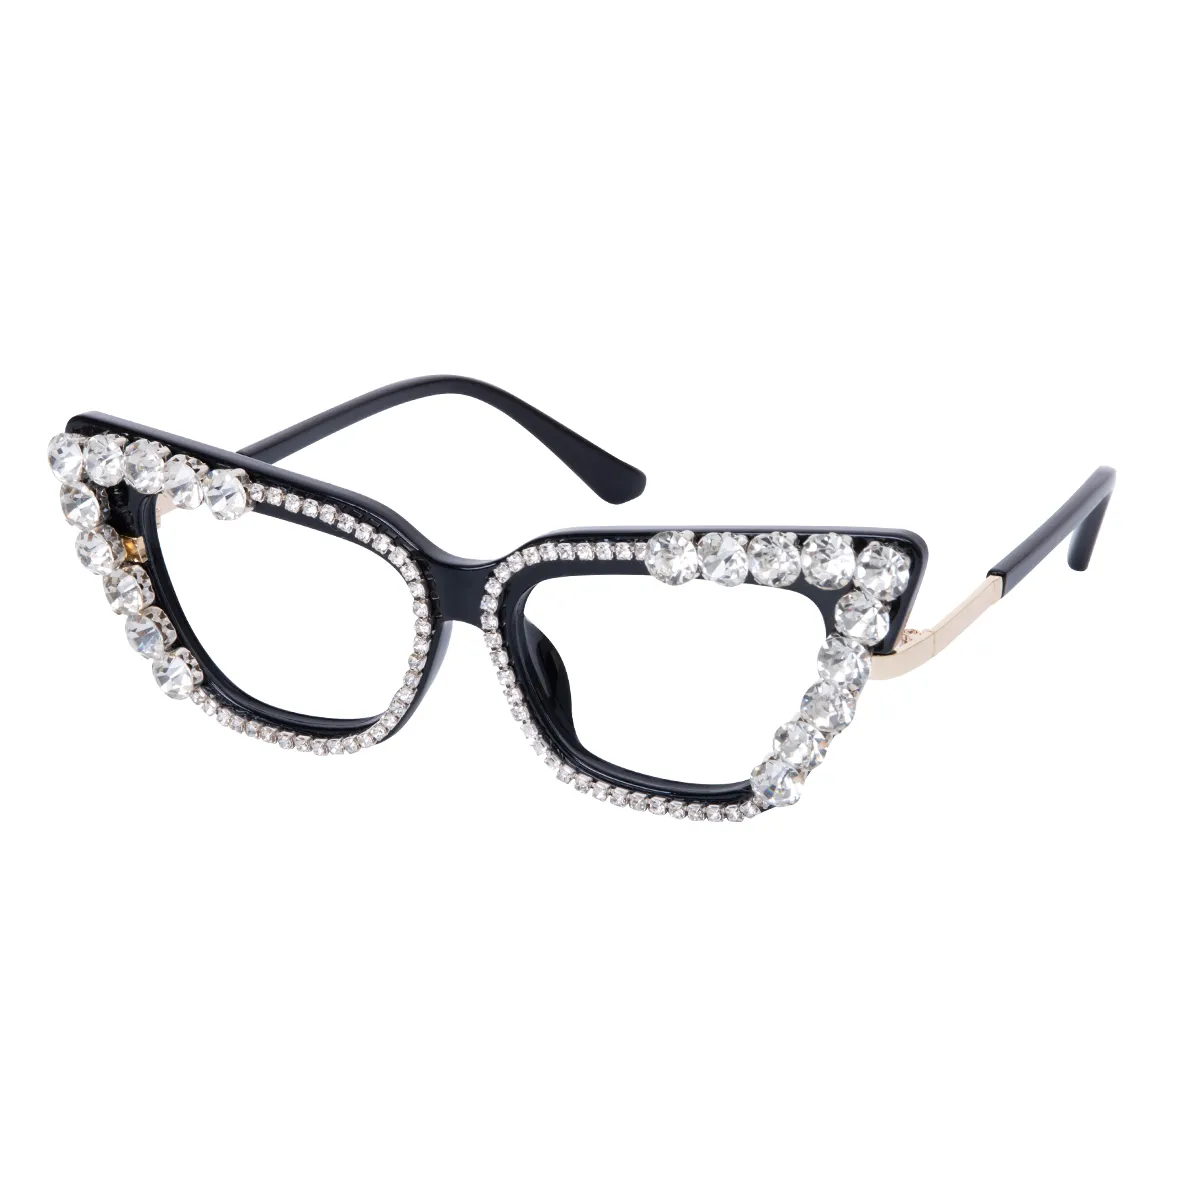 Vespera - Cat-eye Black Glasses for Women